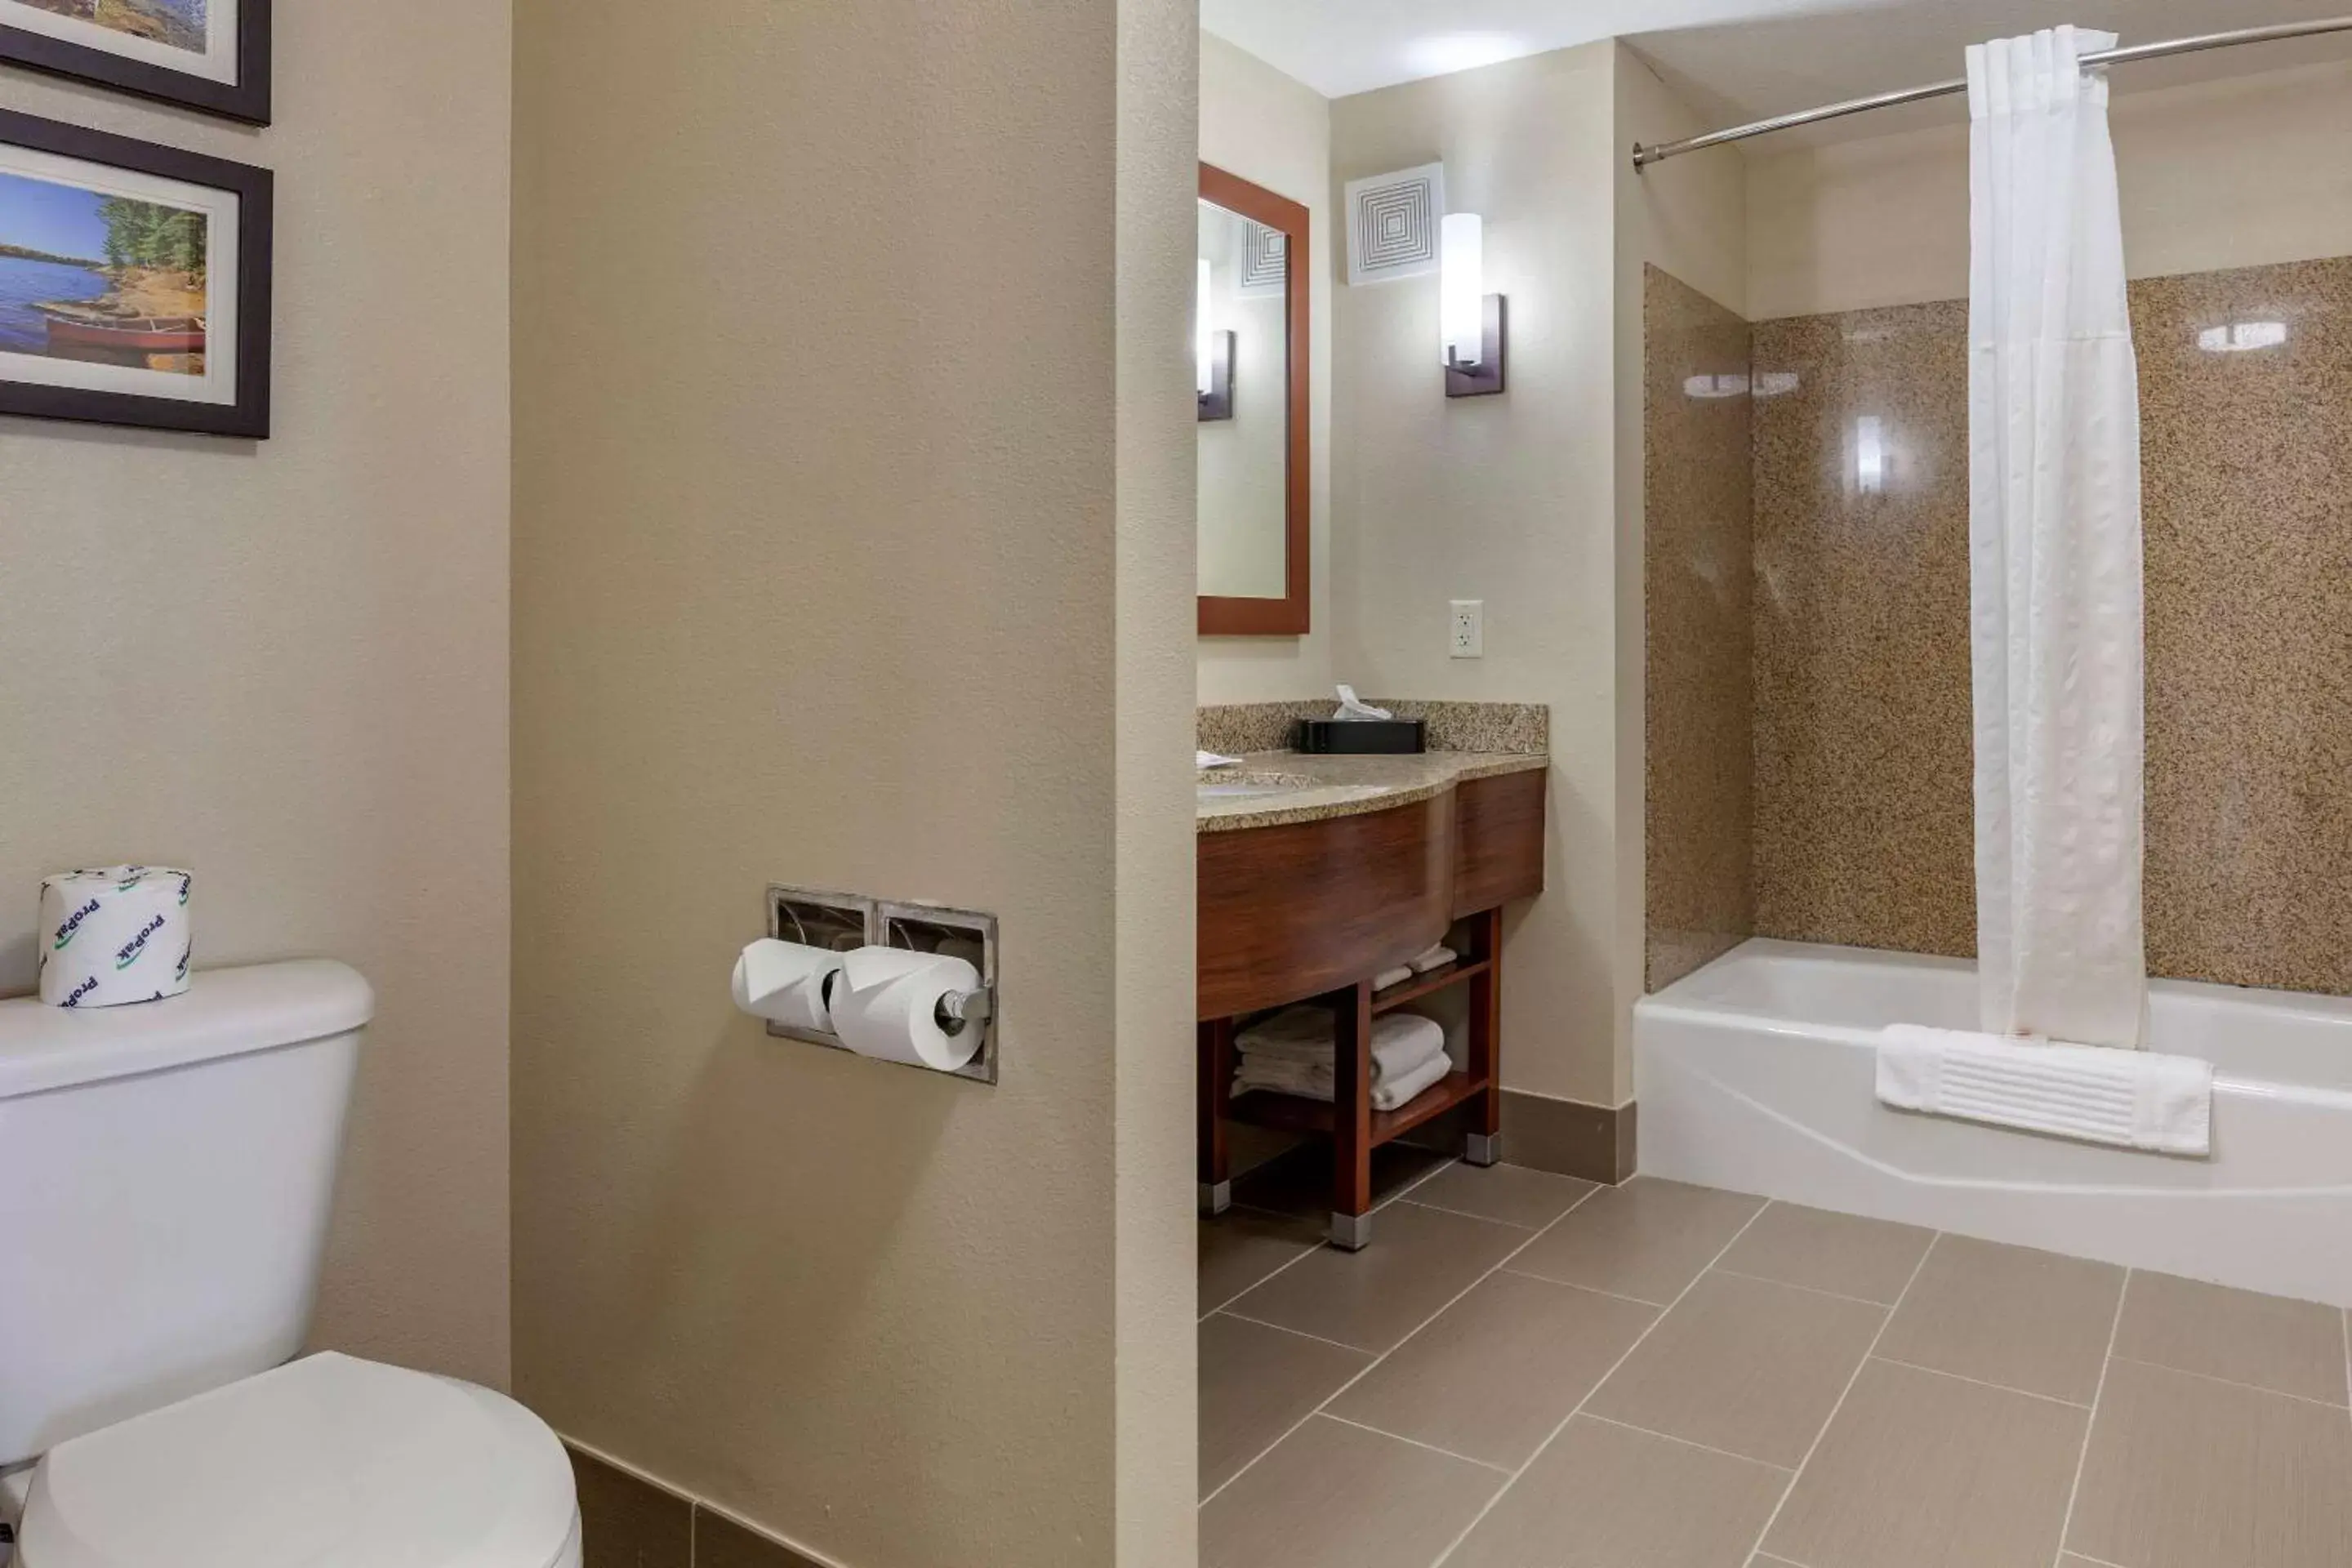 Bedroom, Bathroom in Comfort Suites Oshkosh